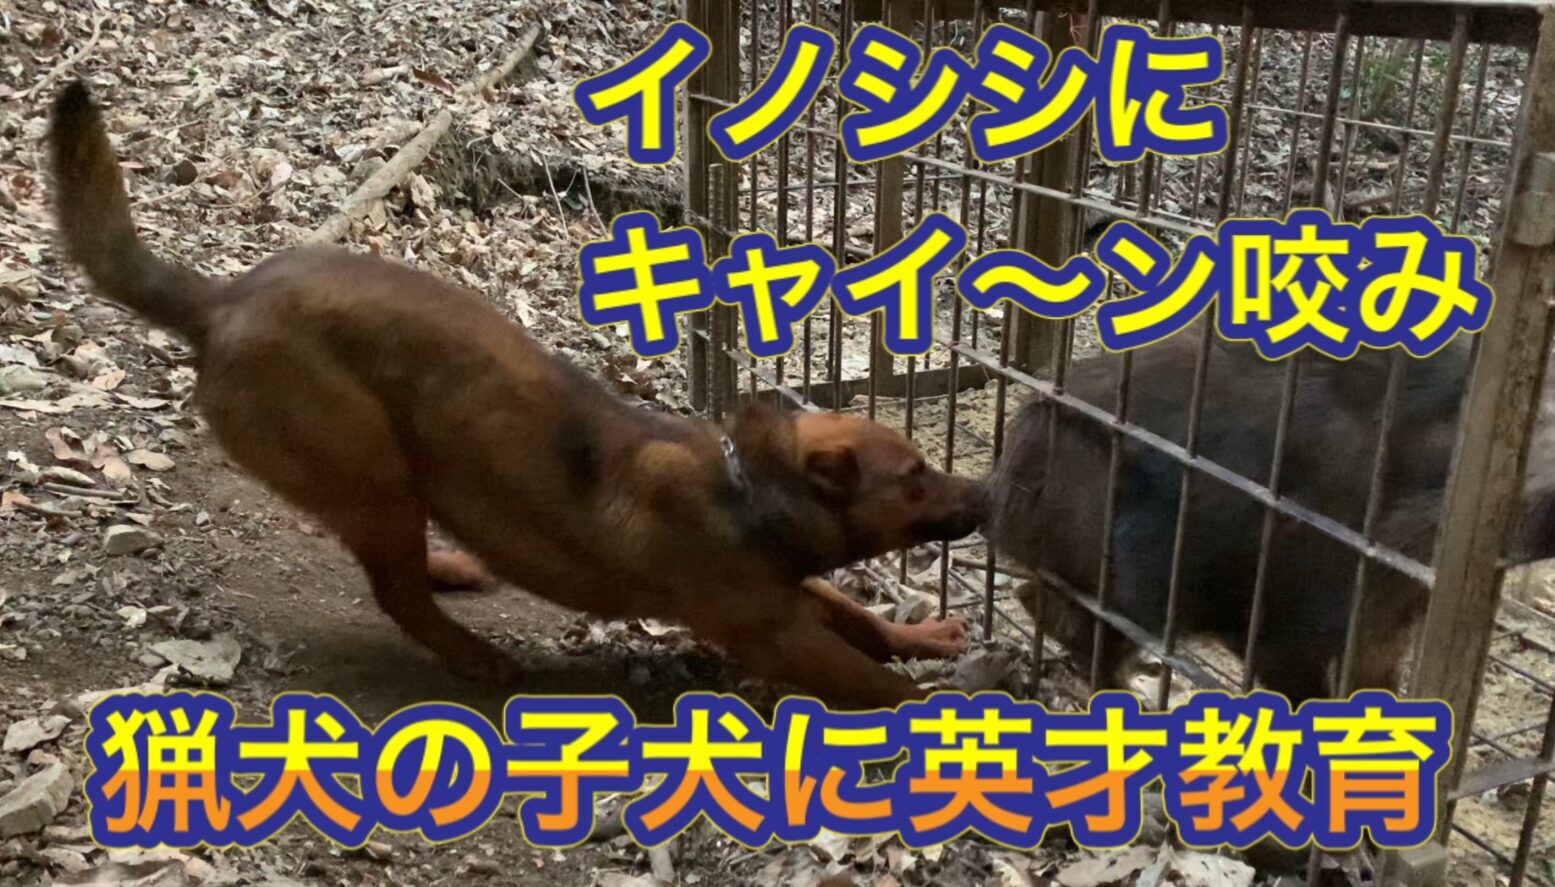 熊野地犬の子犬で猟犬見習いリキが箱罠にかかったイノシシにキャイ〜ン咬み